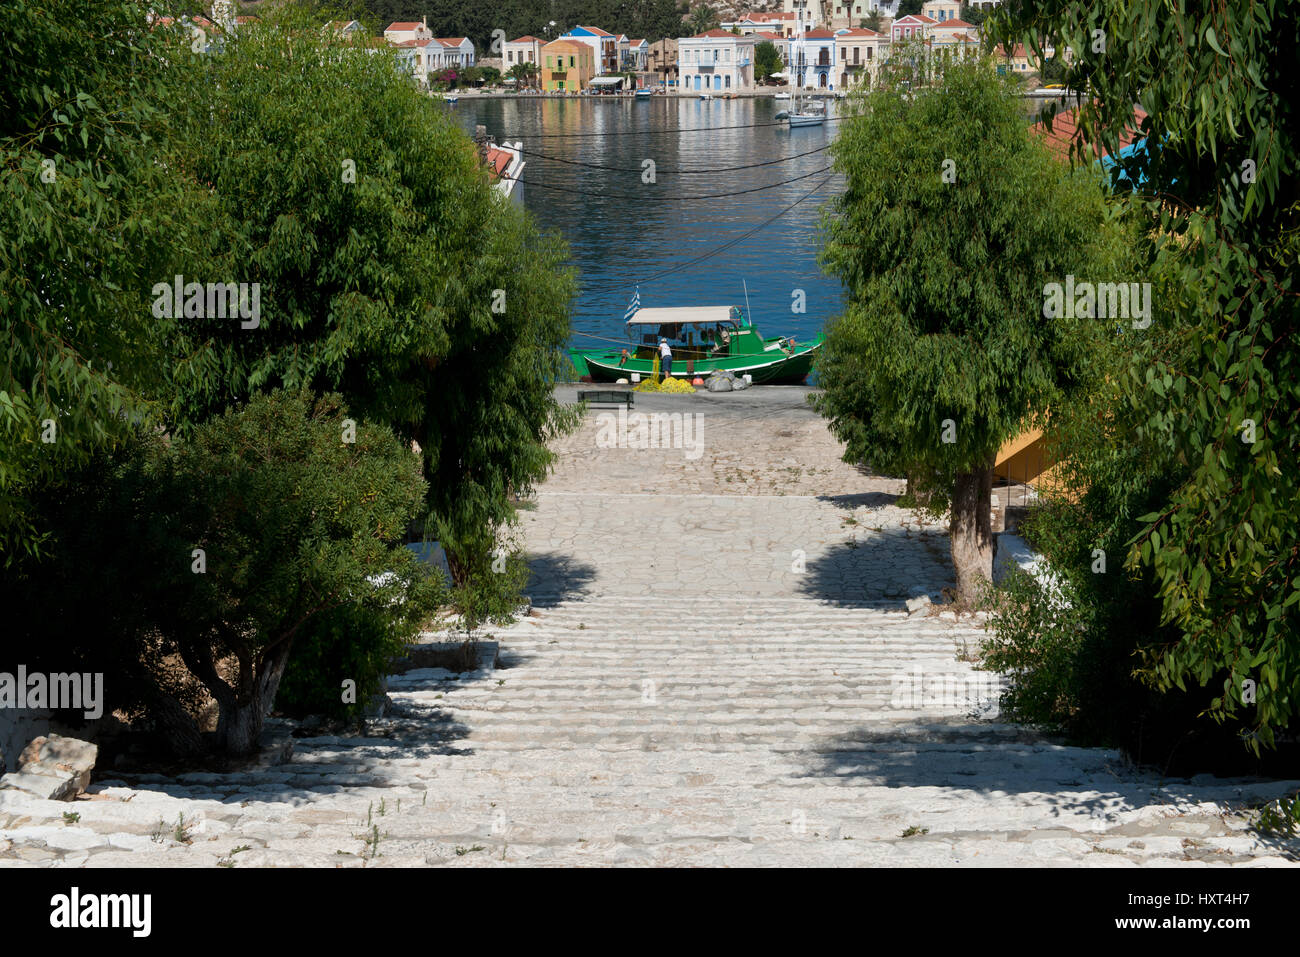 abwärts führende Treppe von Bäumen gesäumt, dahinter Hafen mit bunten Häusern und grünem Fischerboot, Insel Kastellorizo, Dodekanes, Griechenland Stock Photo